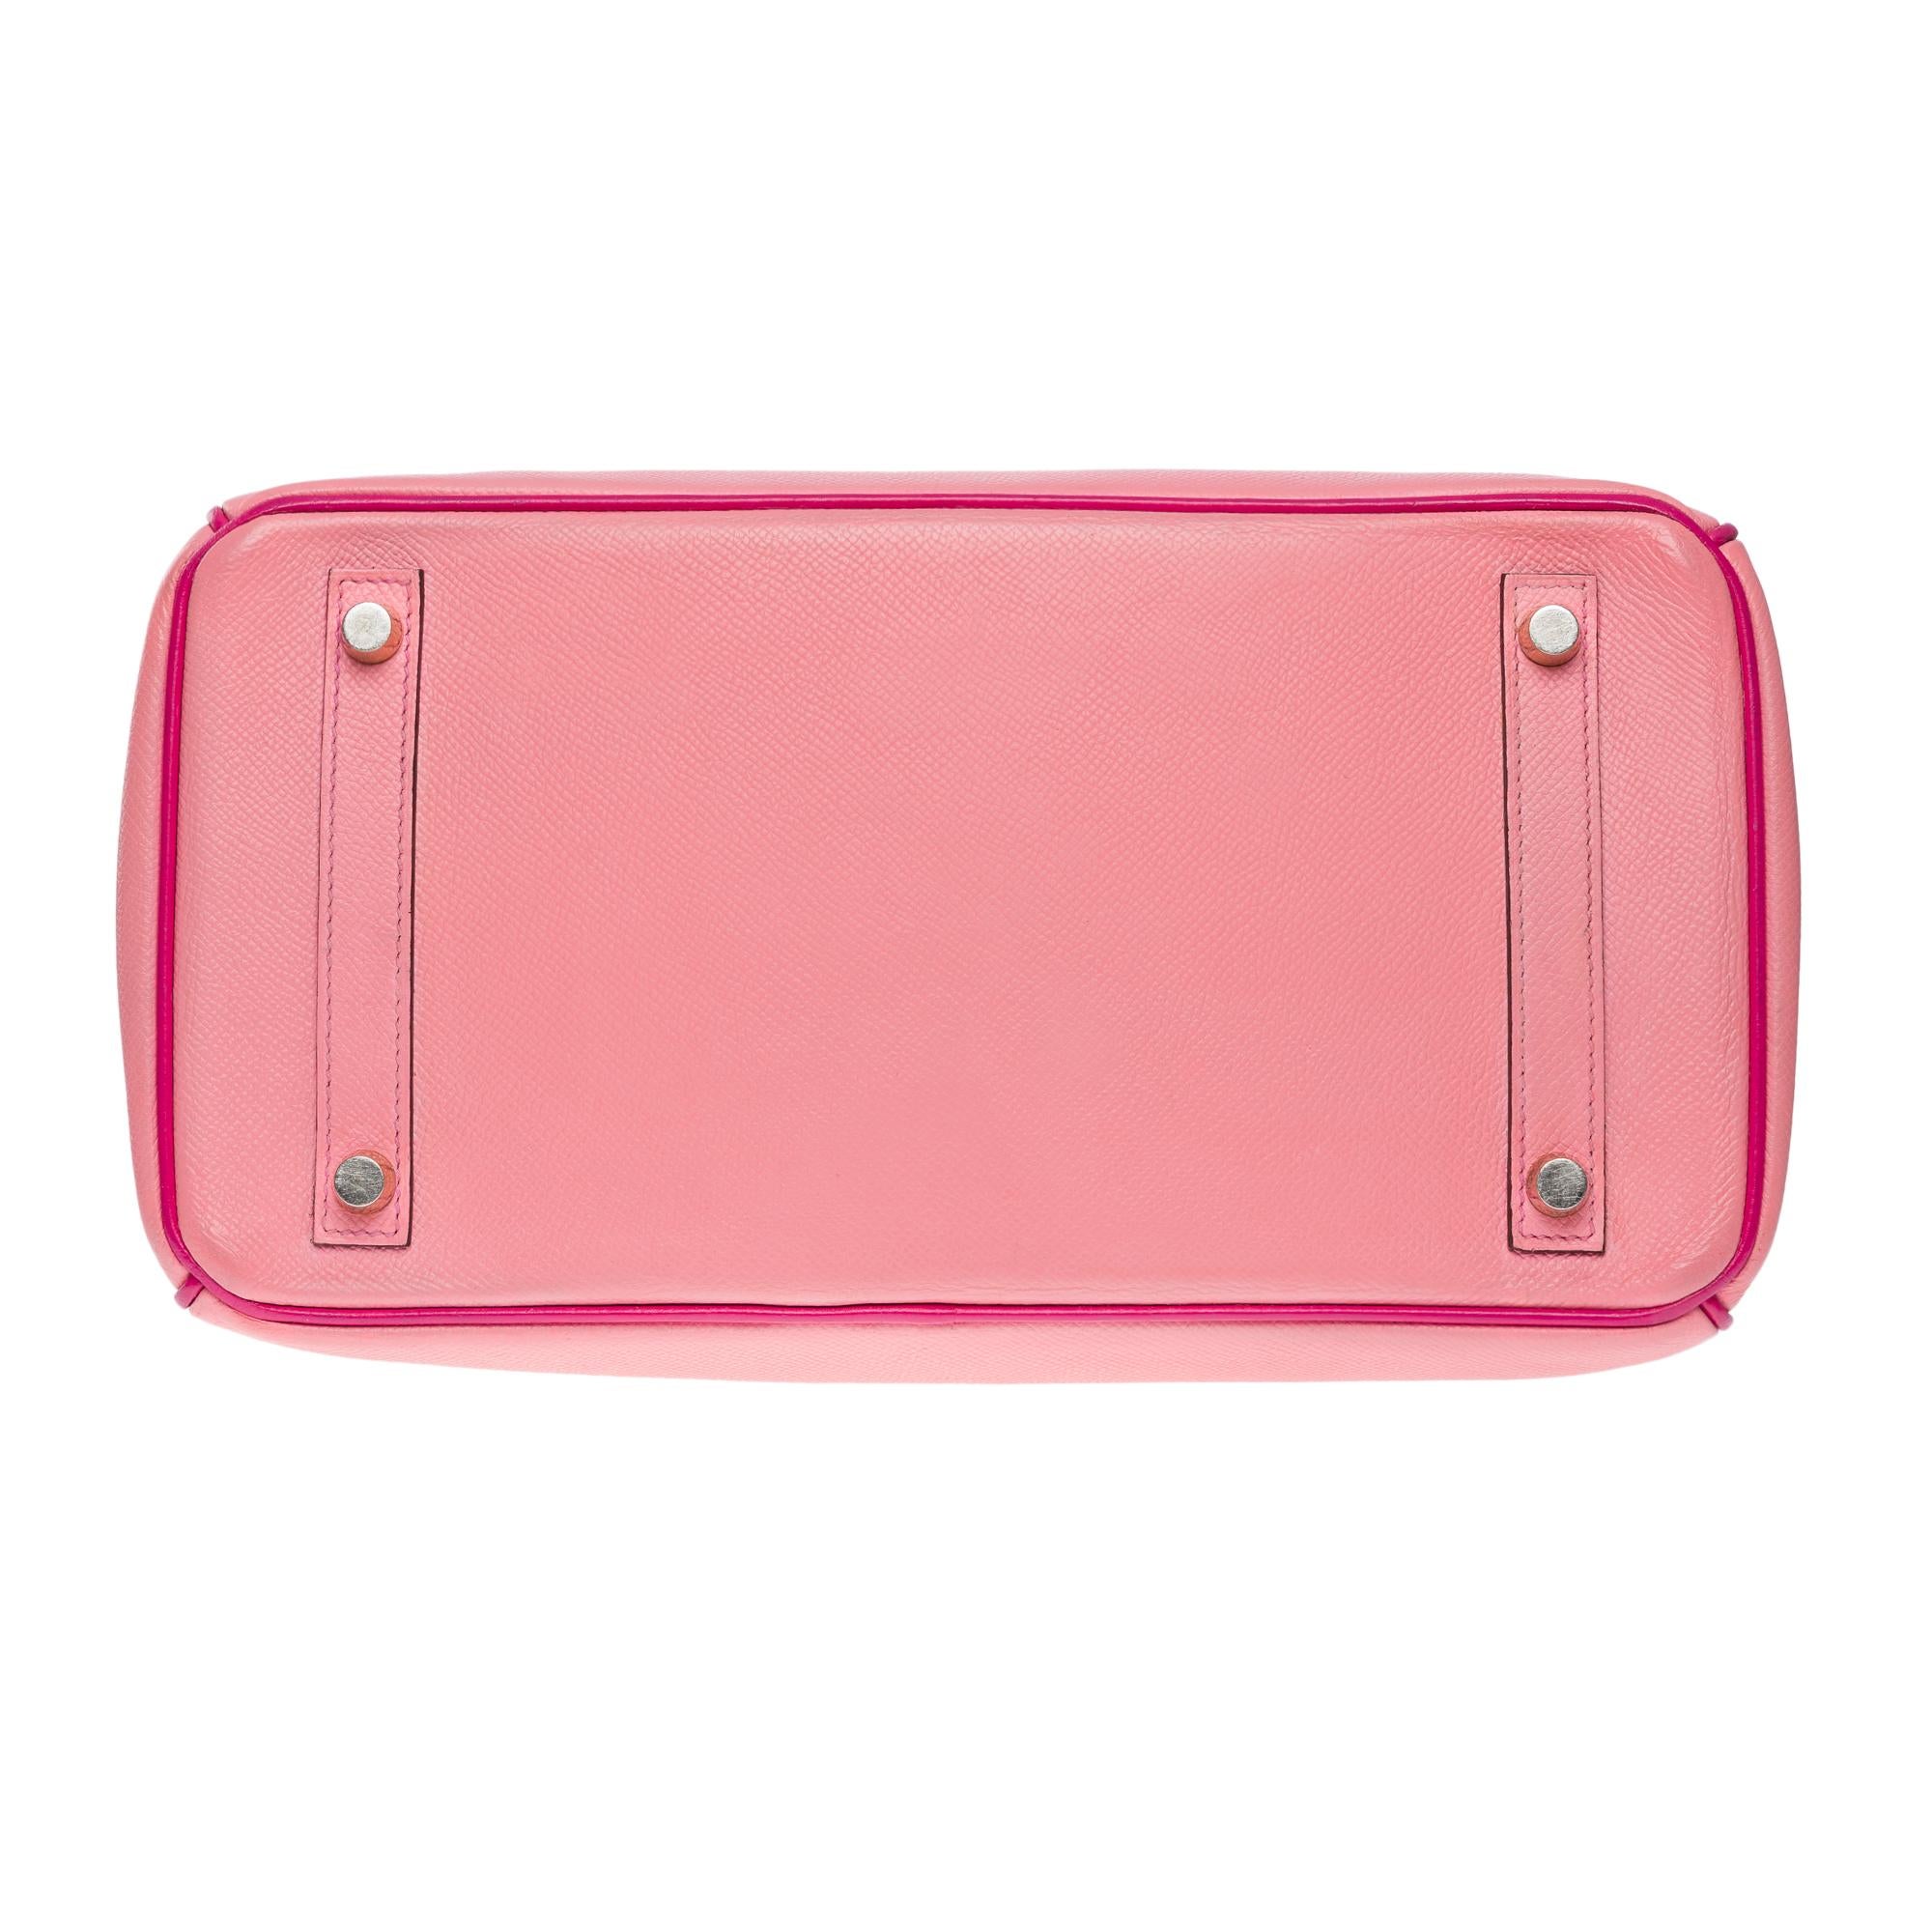  Rare Hermès Birkin 30 HSS Special Order handbag in Pink Epsom leather, BGHW For Sale 6